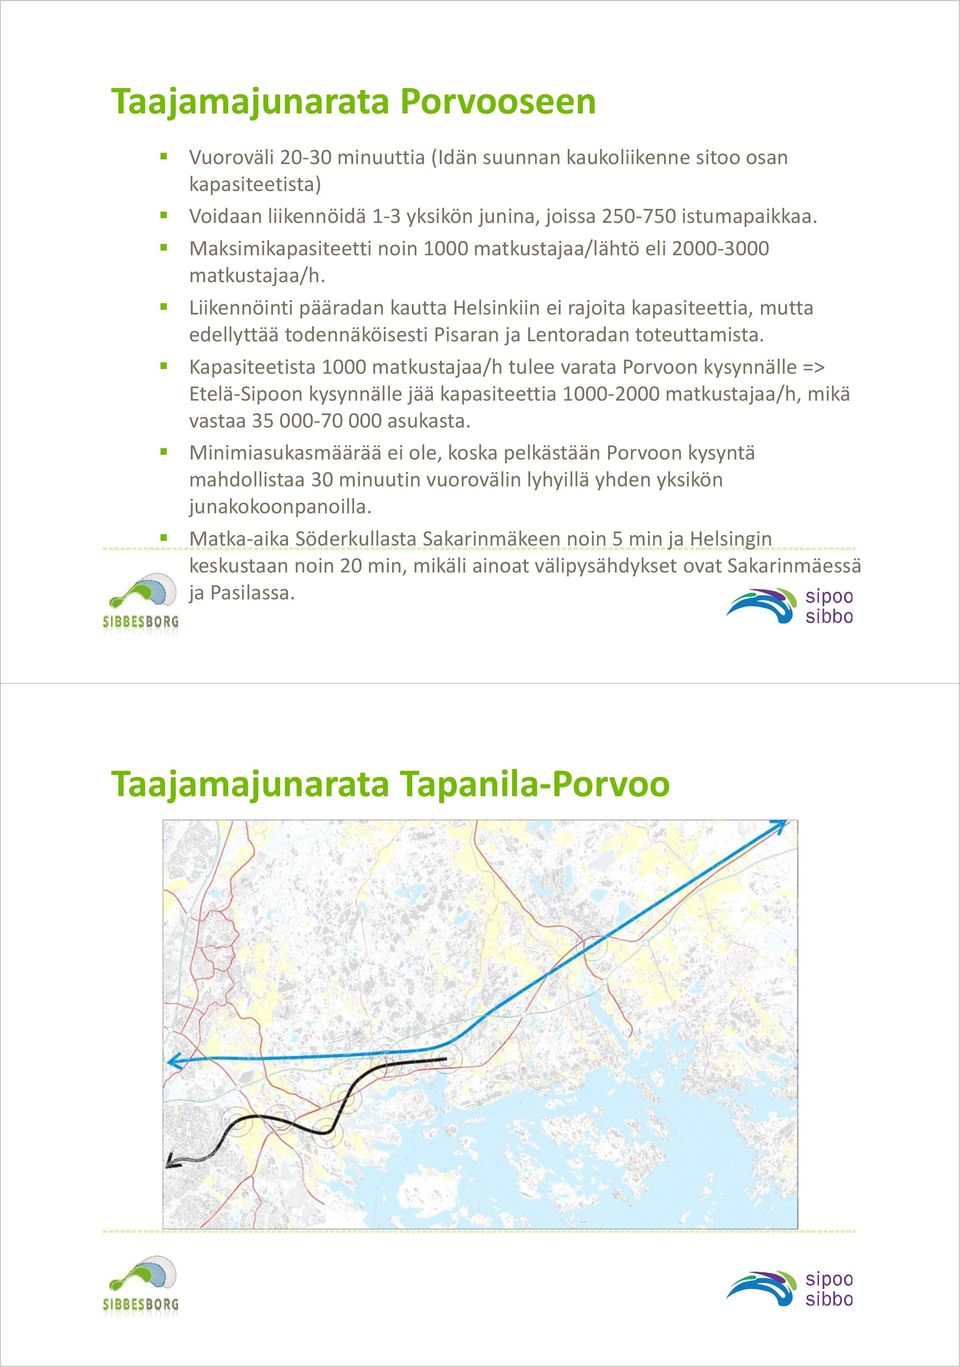 Liikennöinti pääradan kautta Helsinkiin ei rajoita kapasiteettia, mutta edellyttää todennäköisesti Pisaran ja Lentoradan toteuttamista.